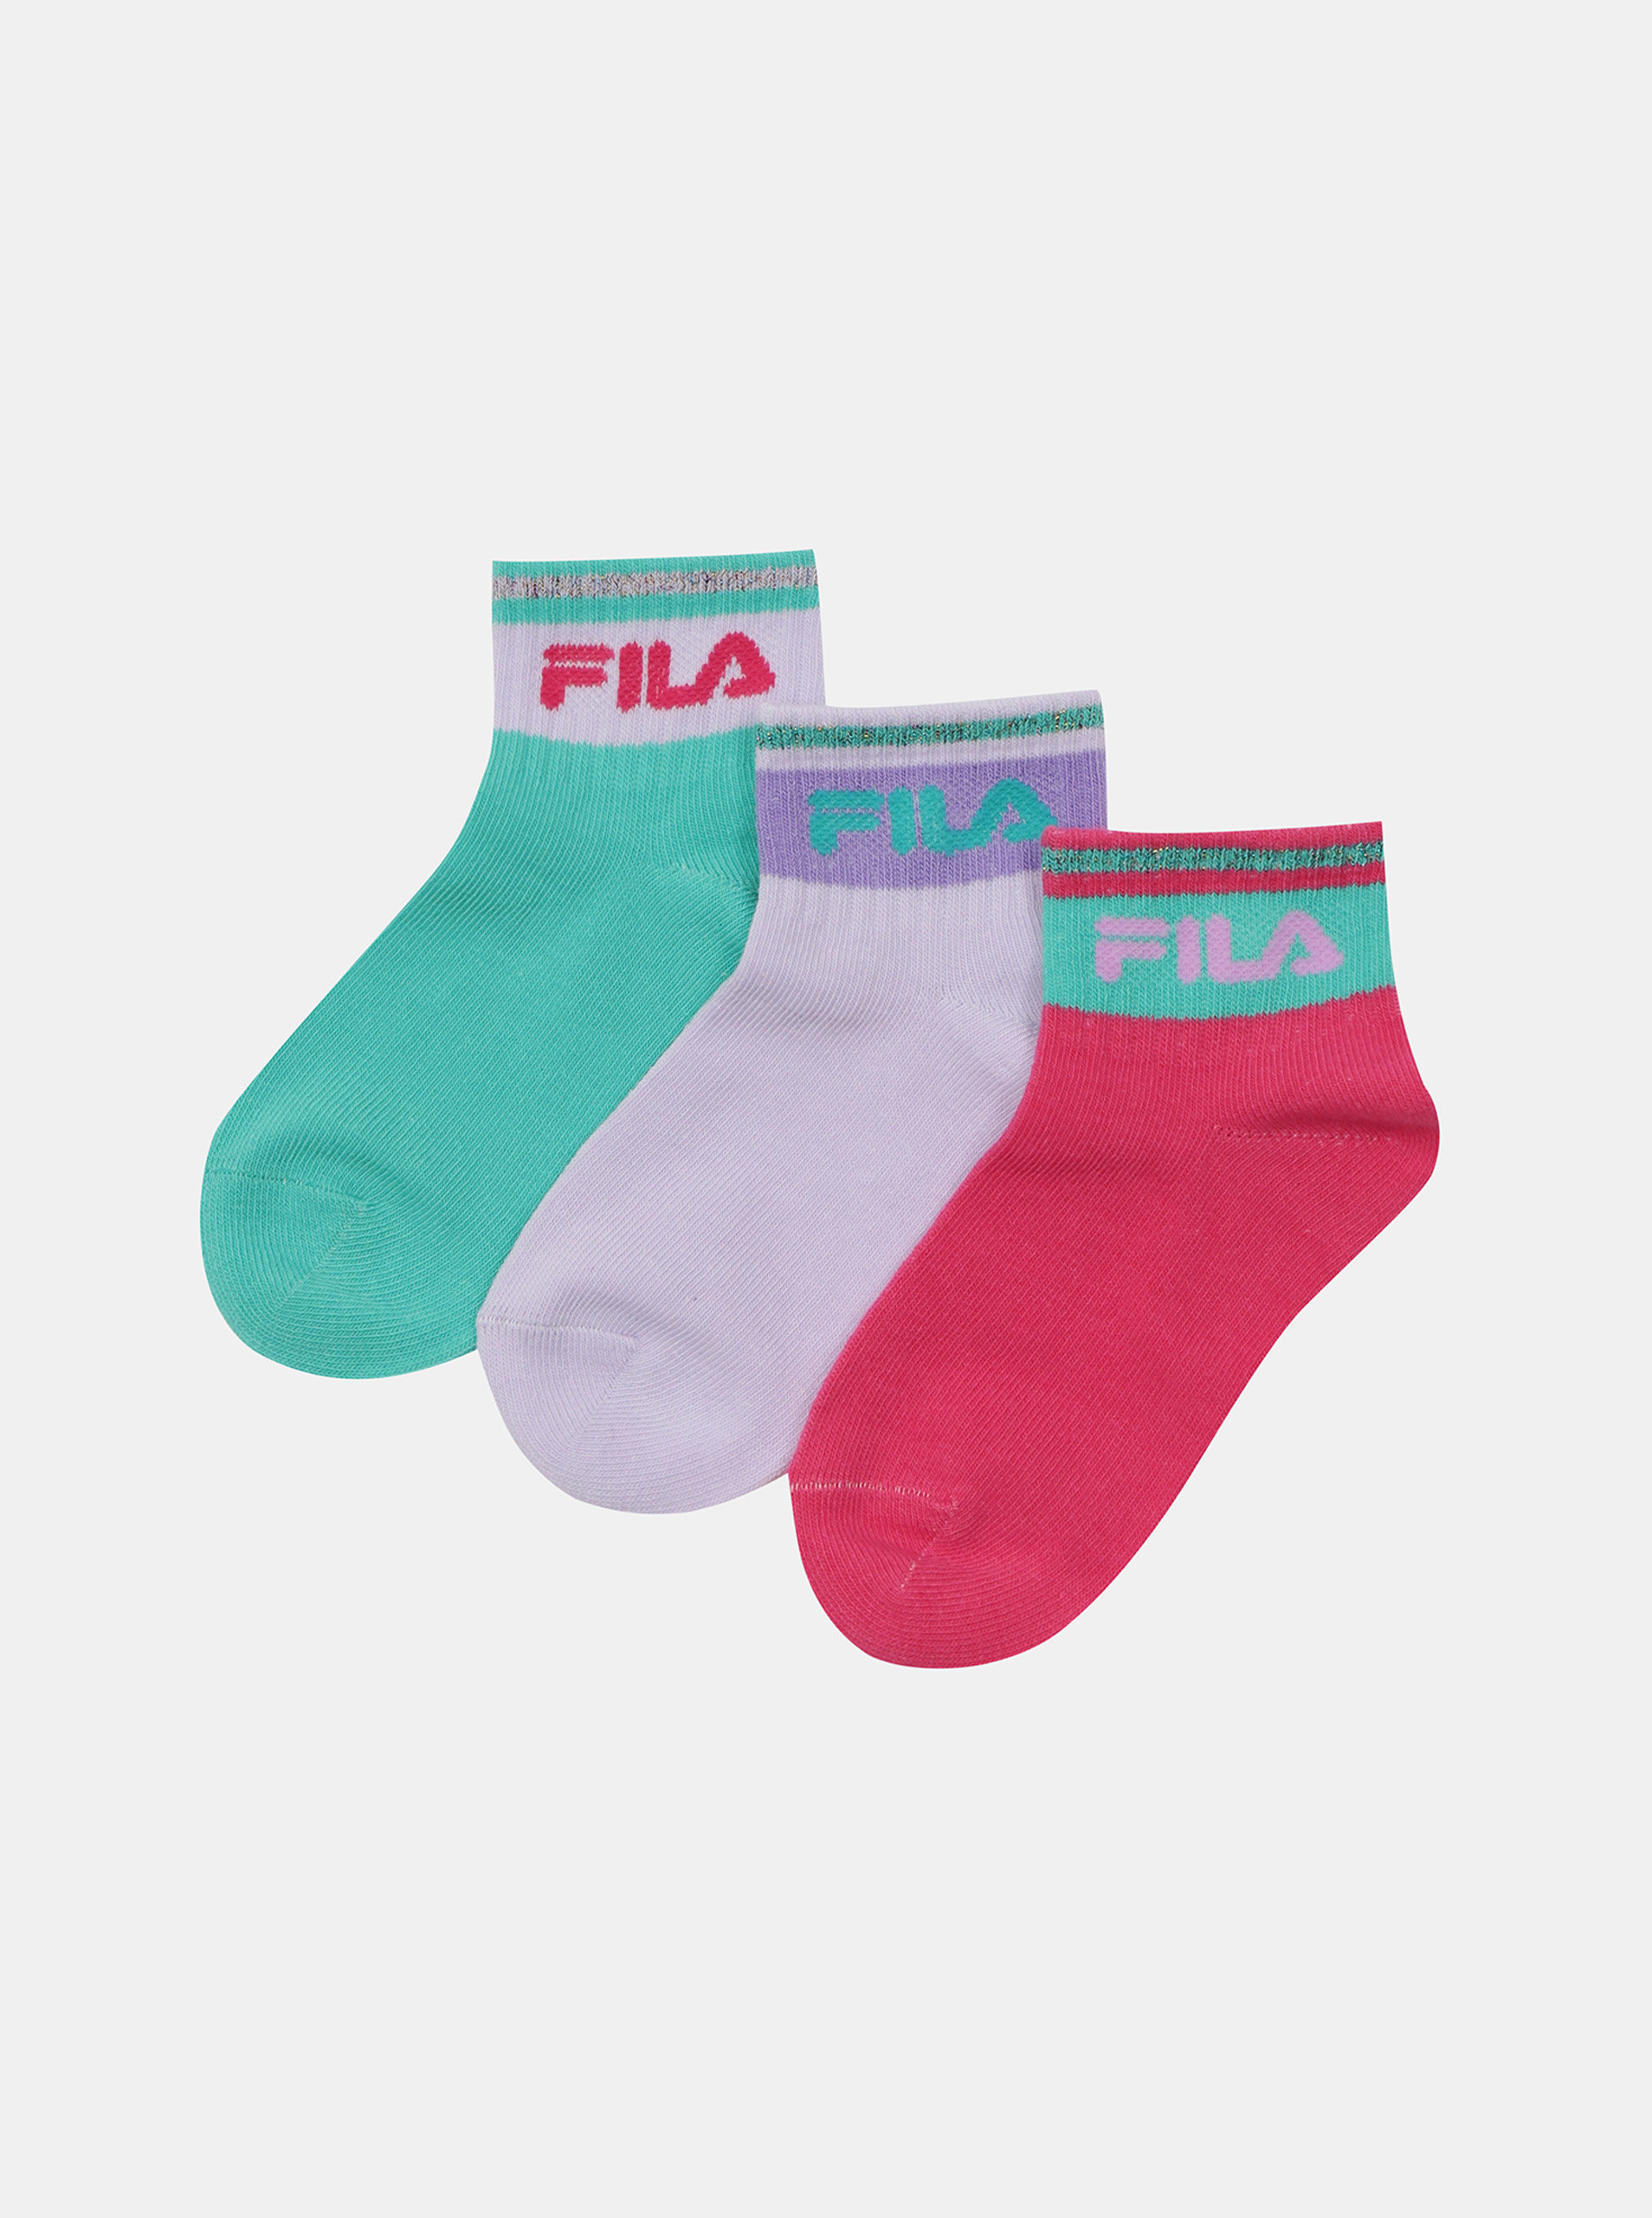 Fotografie Sada tří párů holčičích ponožek v zelené a růžové barvě FILA